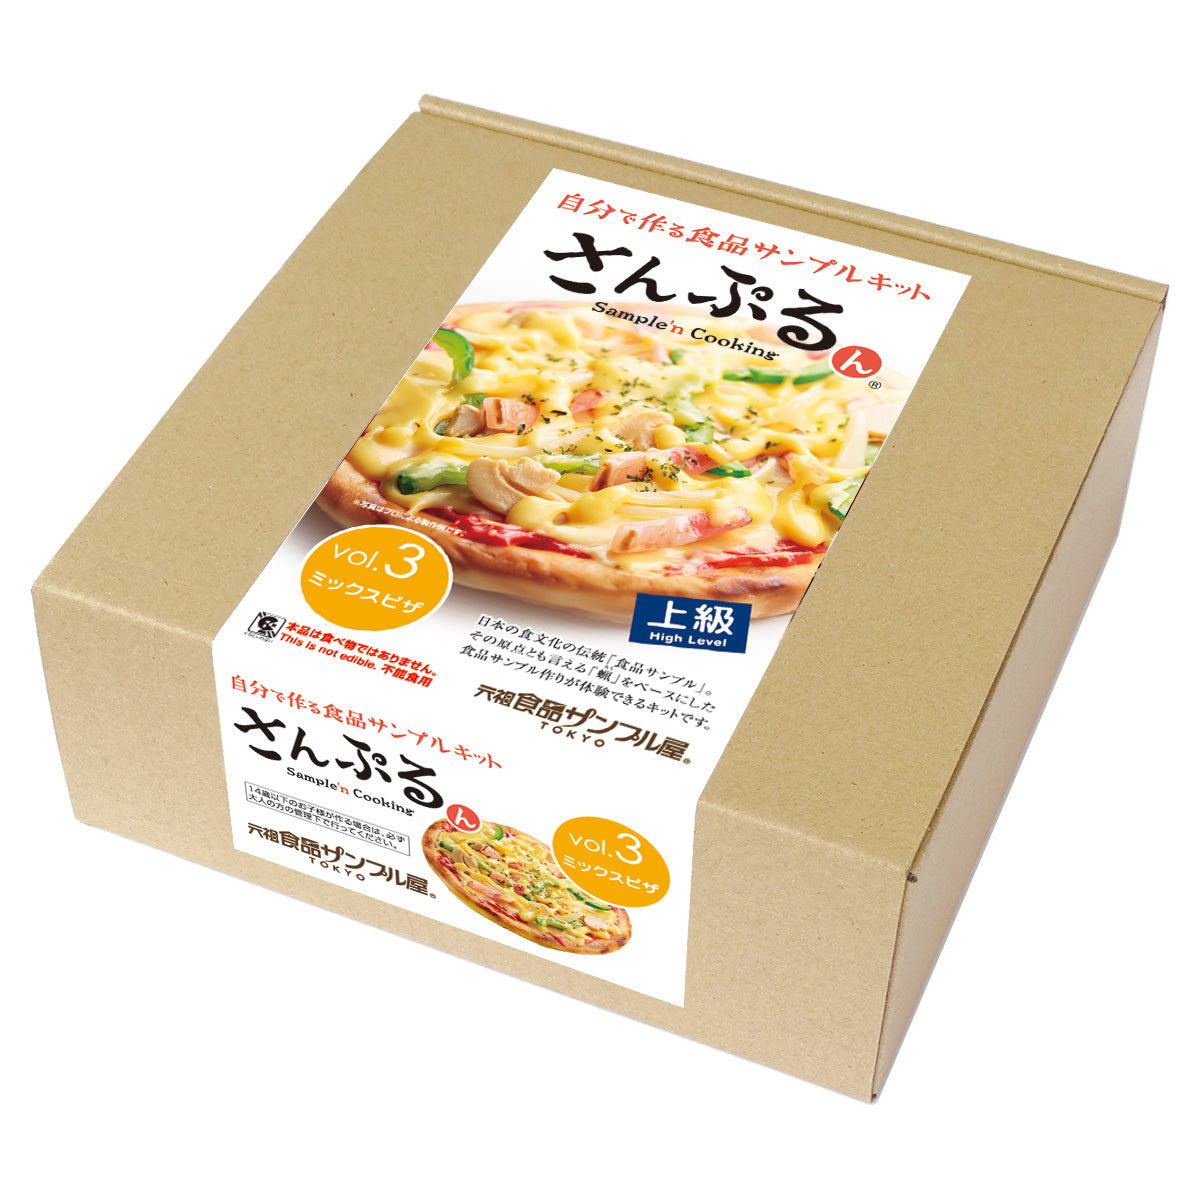 自分で作る食品サンプル製作キット｜さんぷるん Vol.3「ミックスピザ